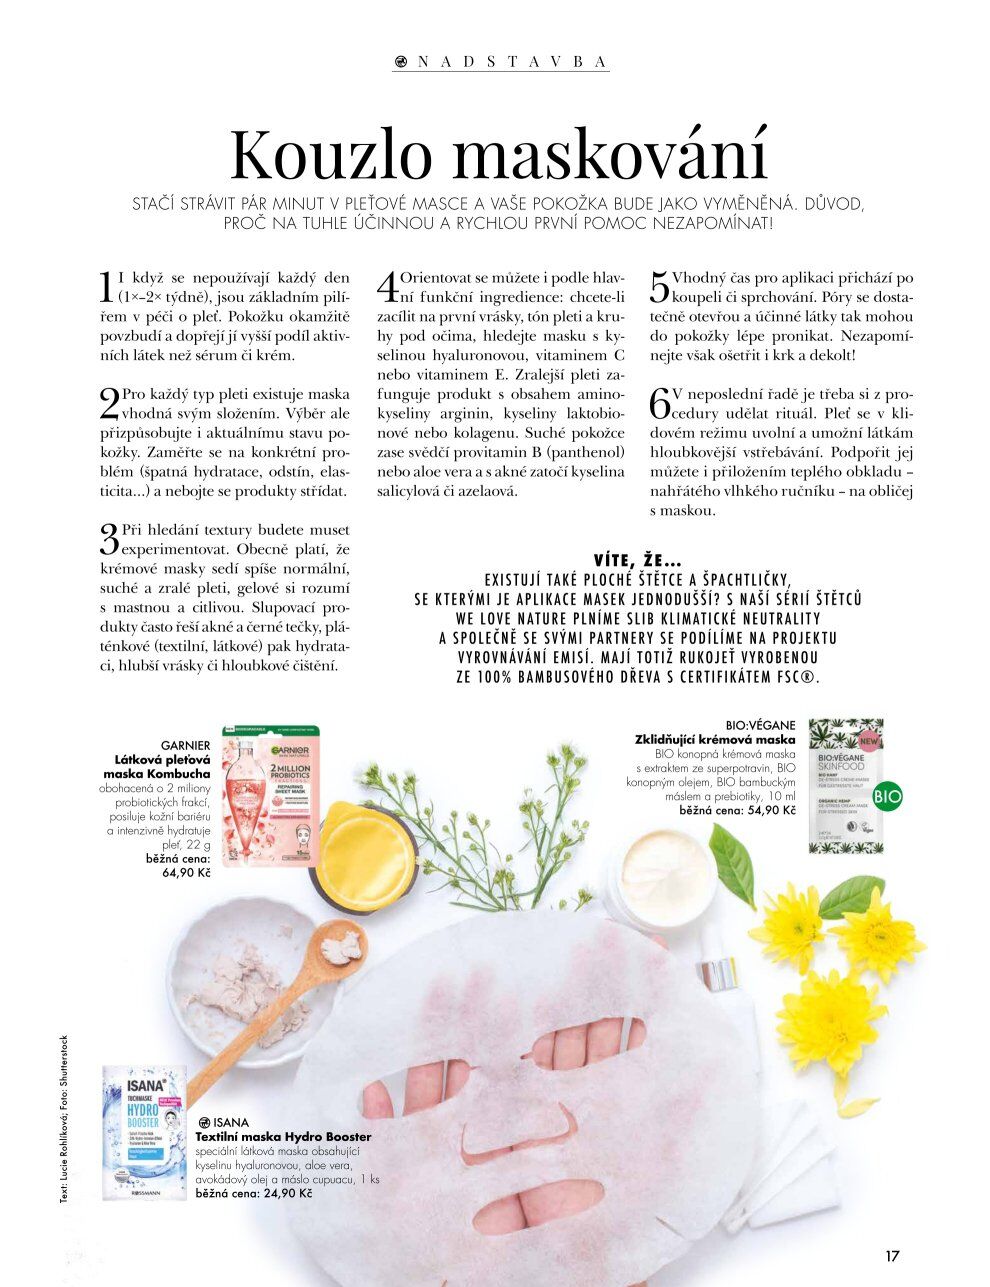 ROSSMANN magazín - Péče o pleť ROSSMANN drogerie strana 19